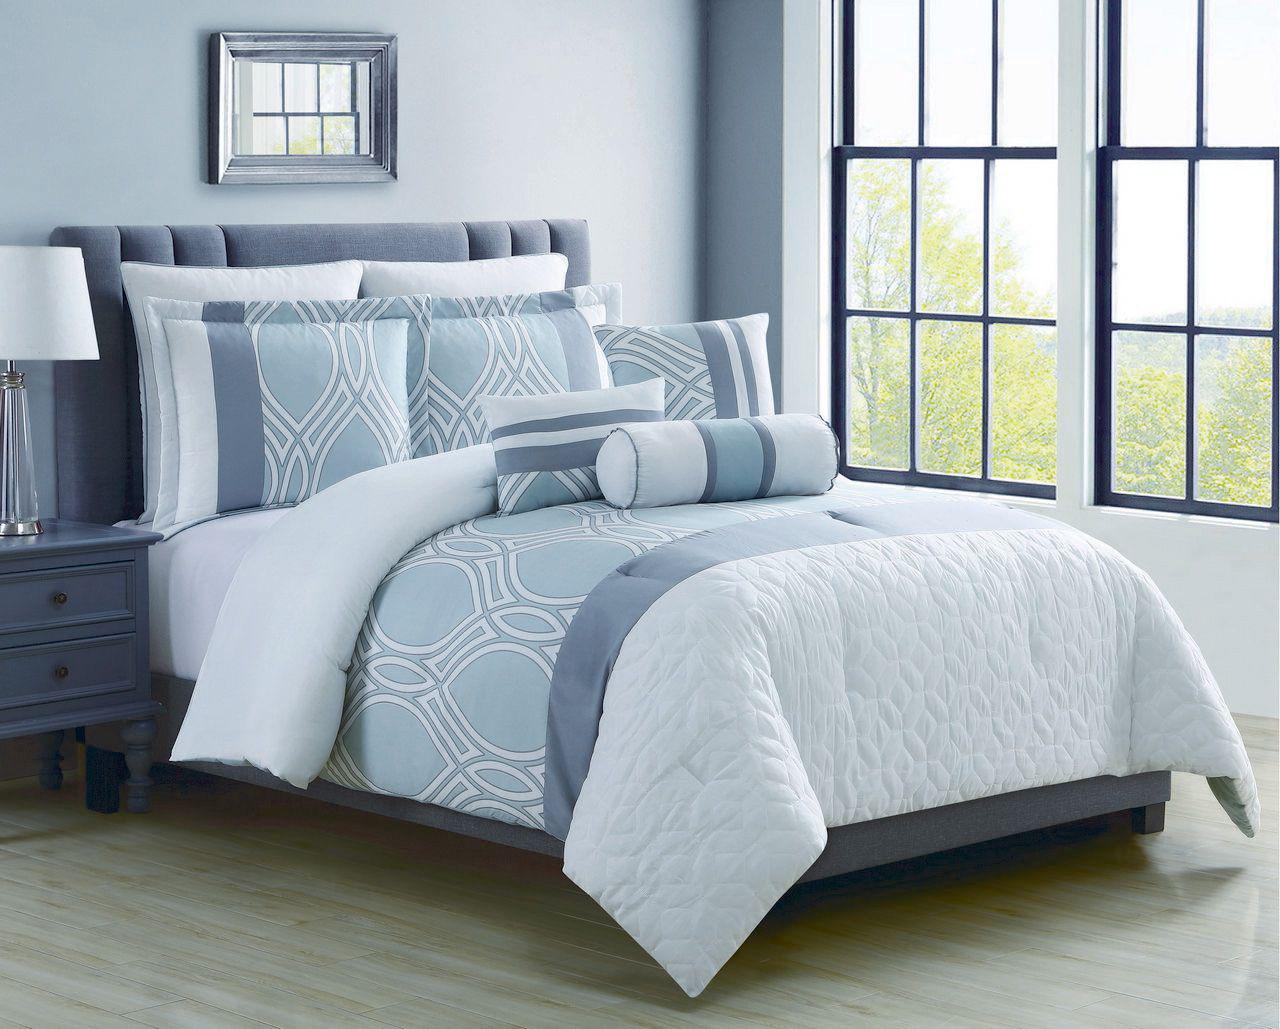 Bedroom Comforter Sets Queen